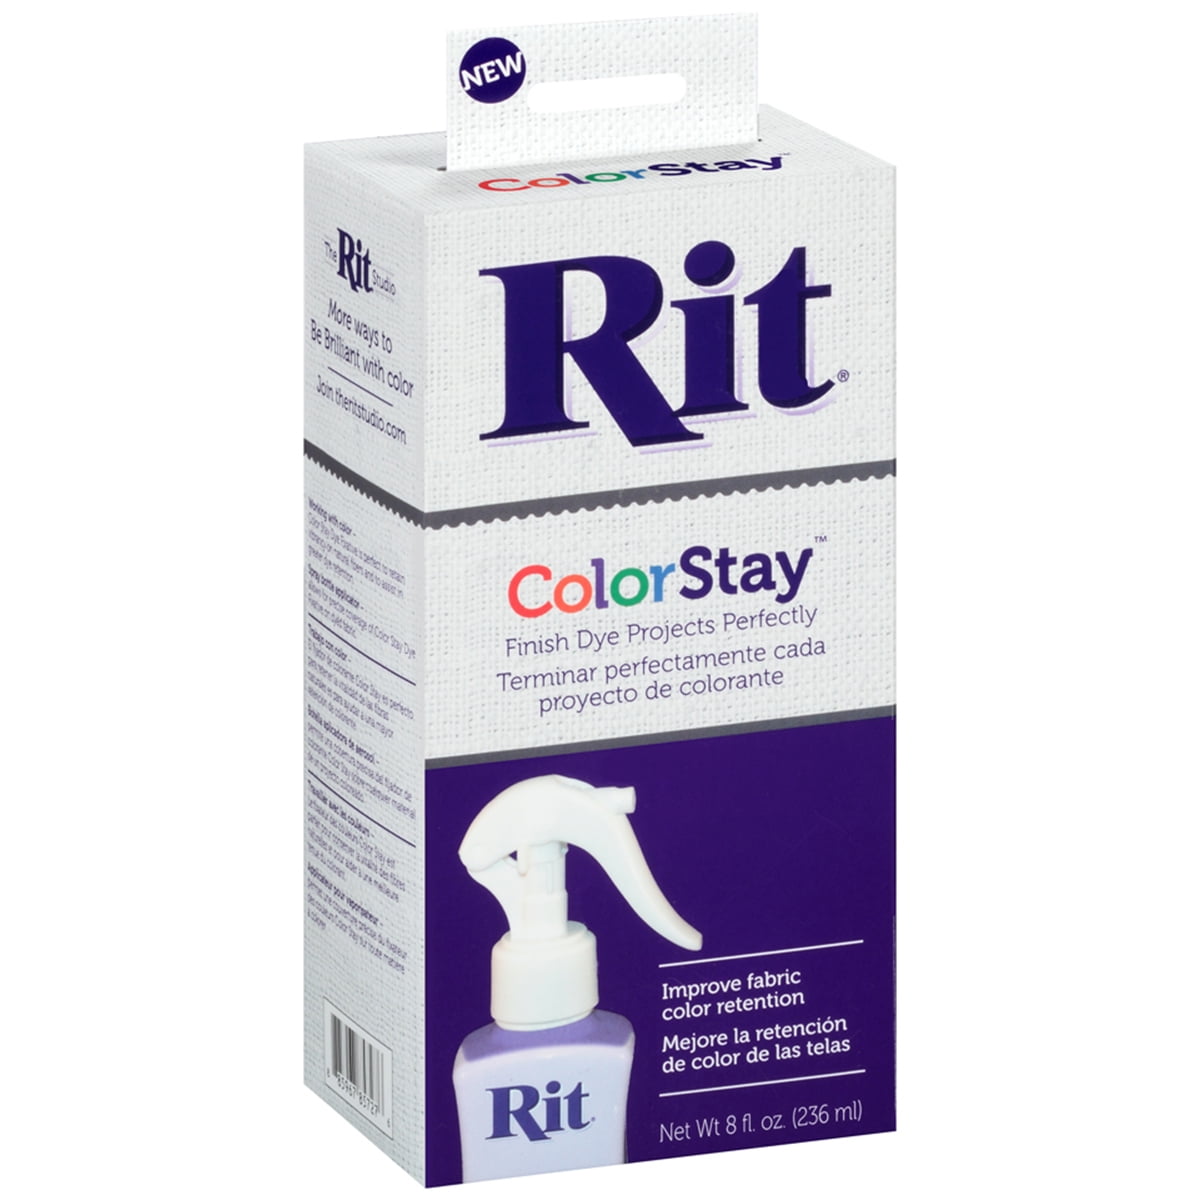 ColorStay Dye Fixative – Rit Dye